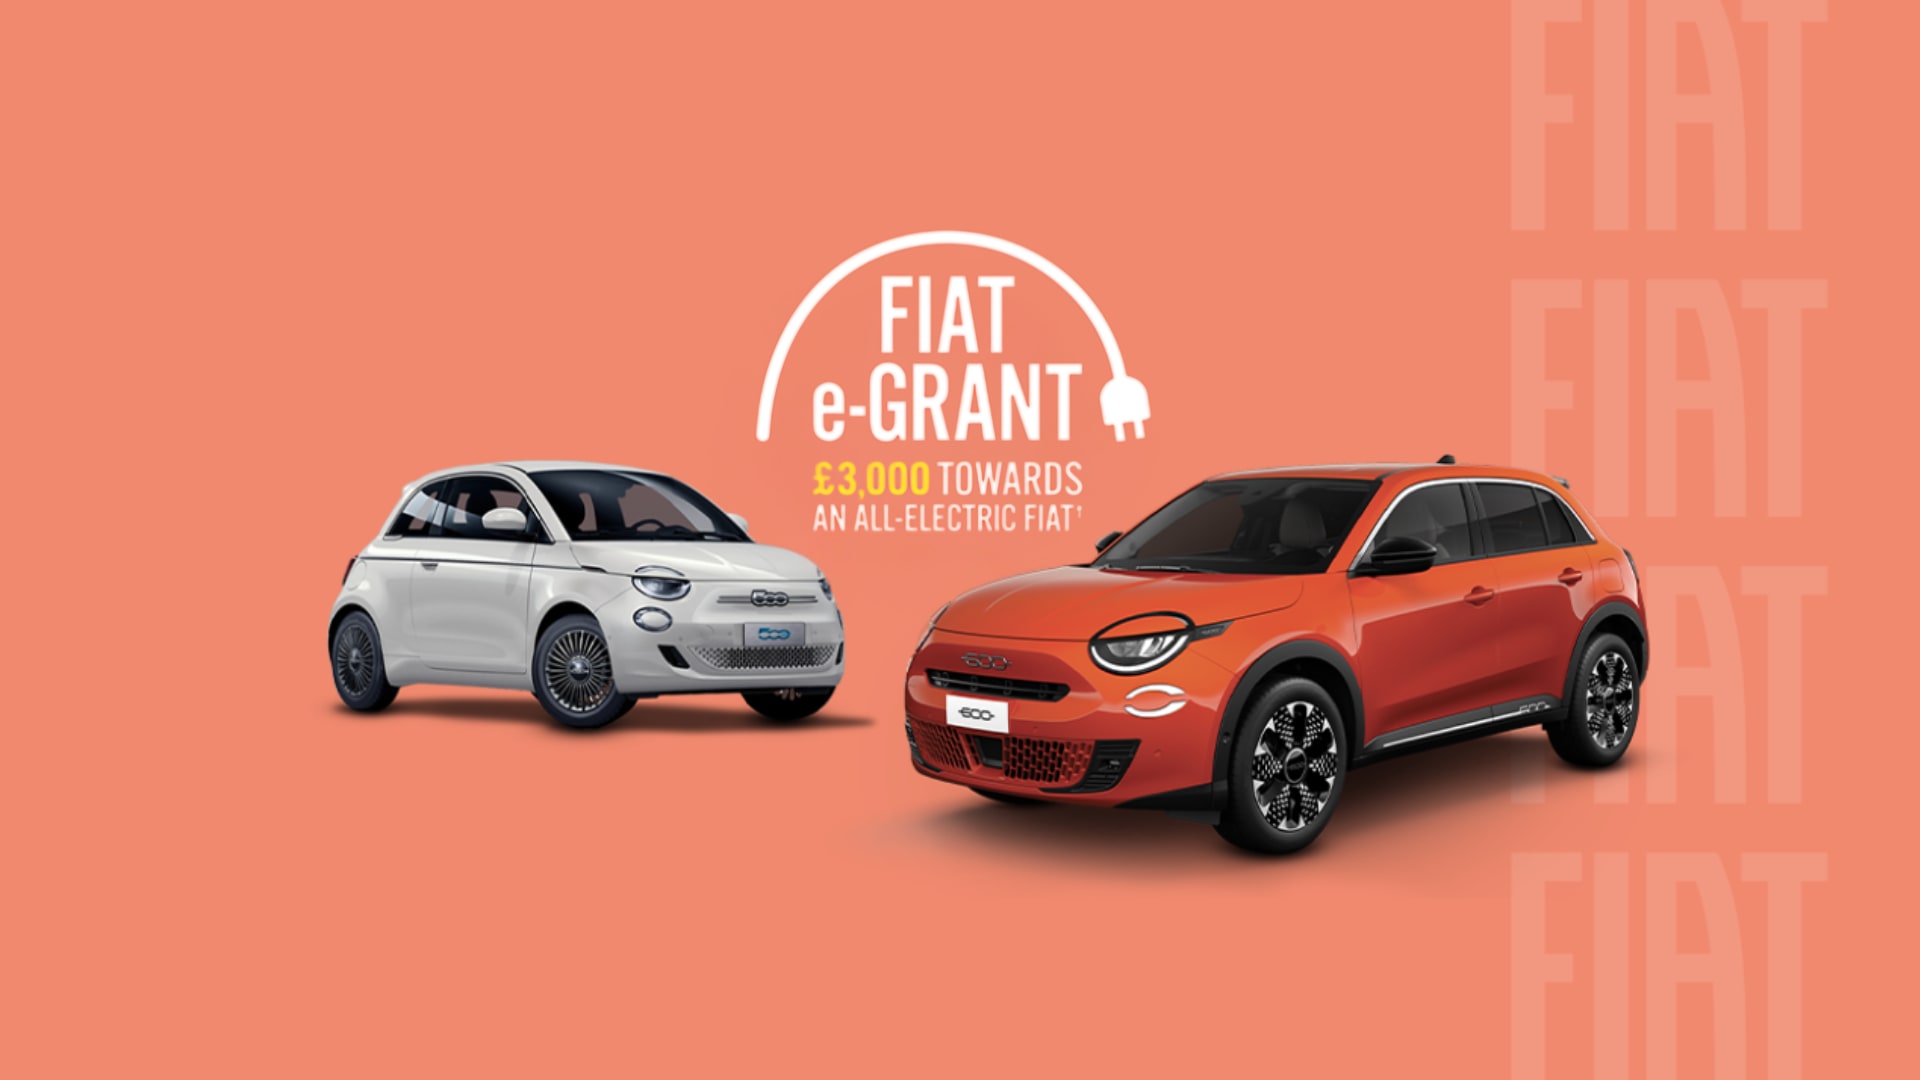 Fiat e-grant